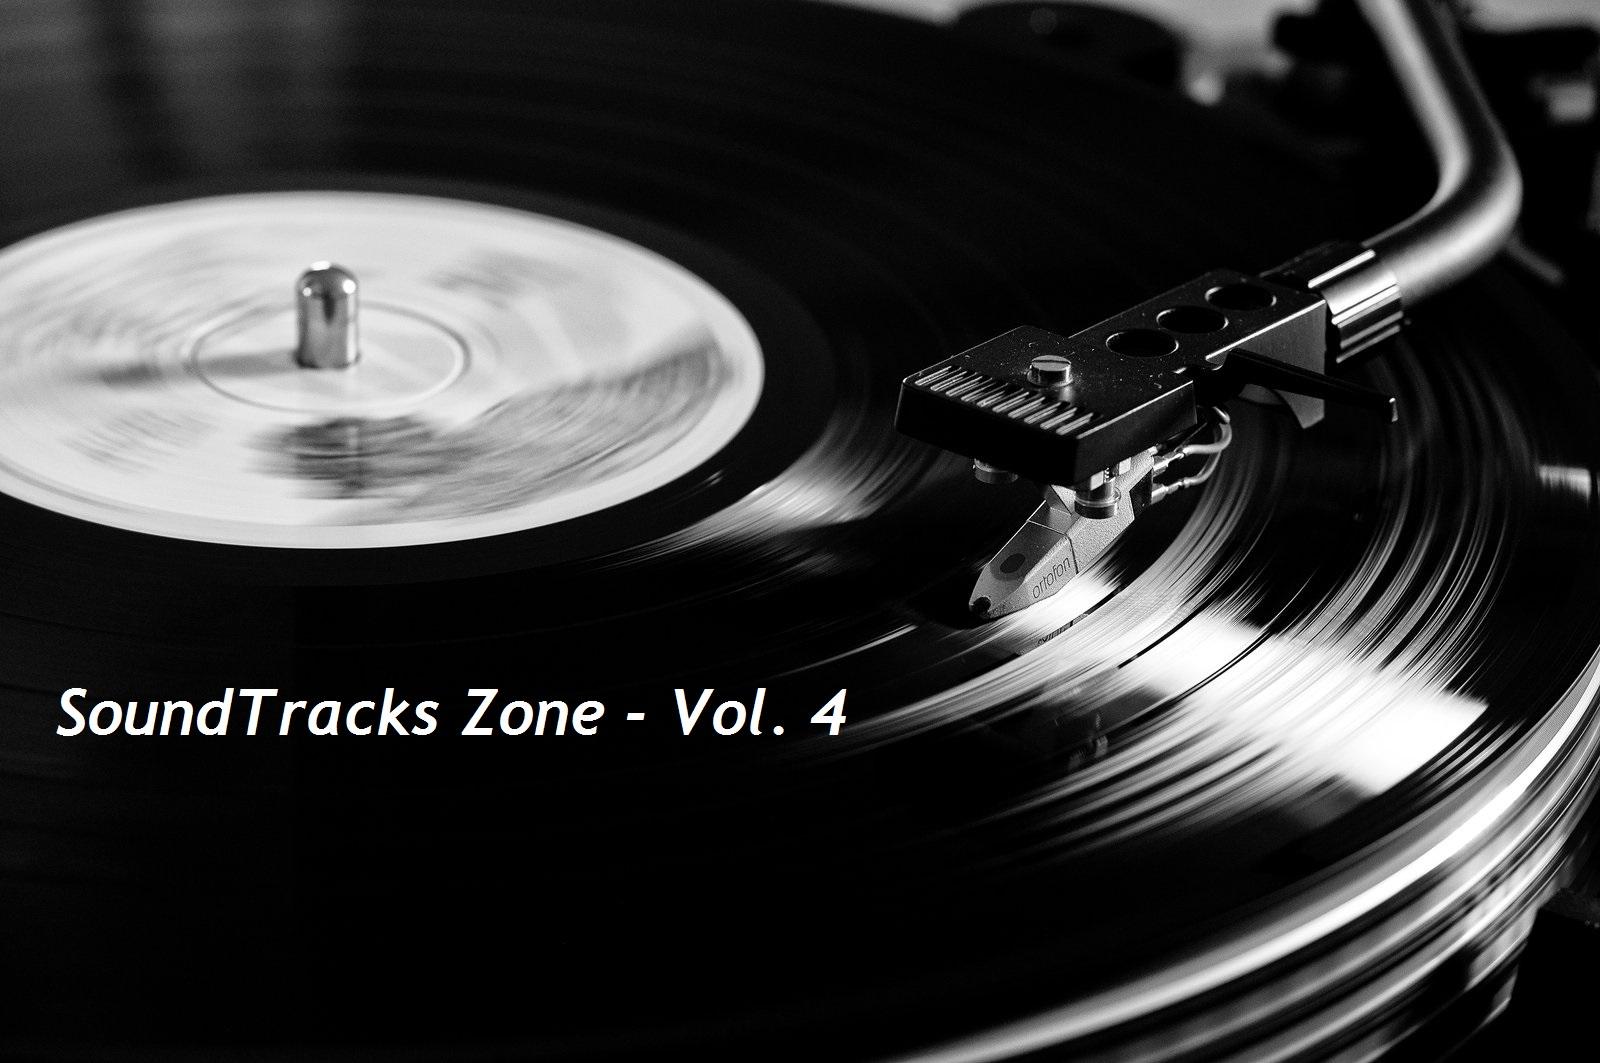 SoundTracks Zone Vol. 4